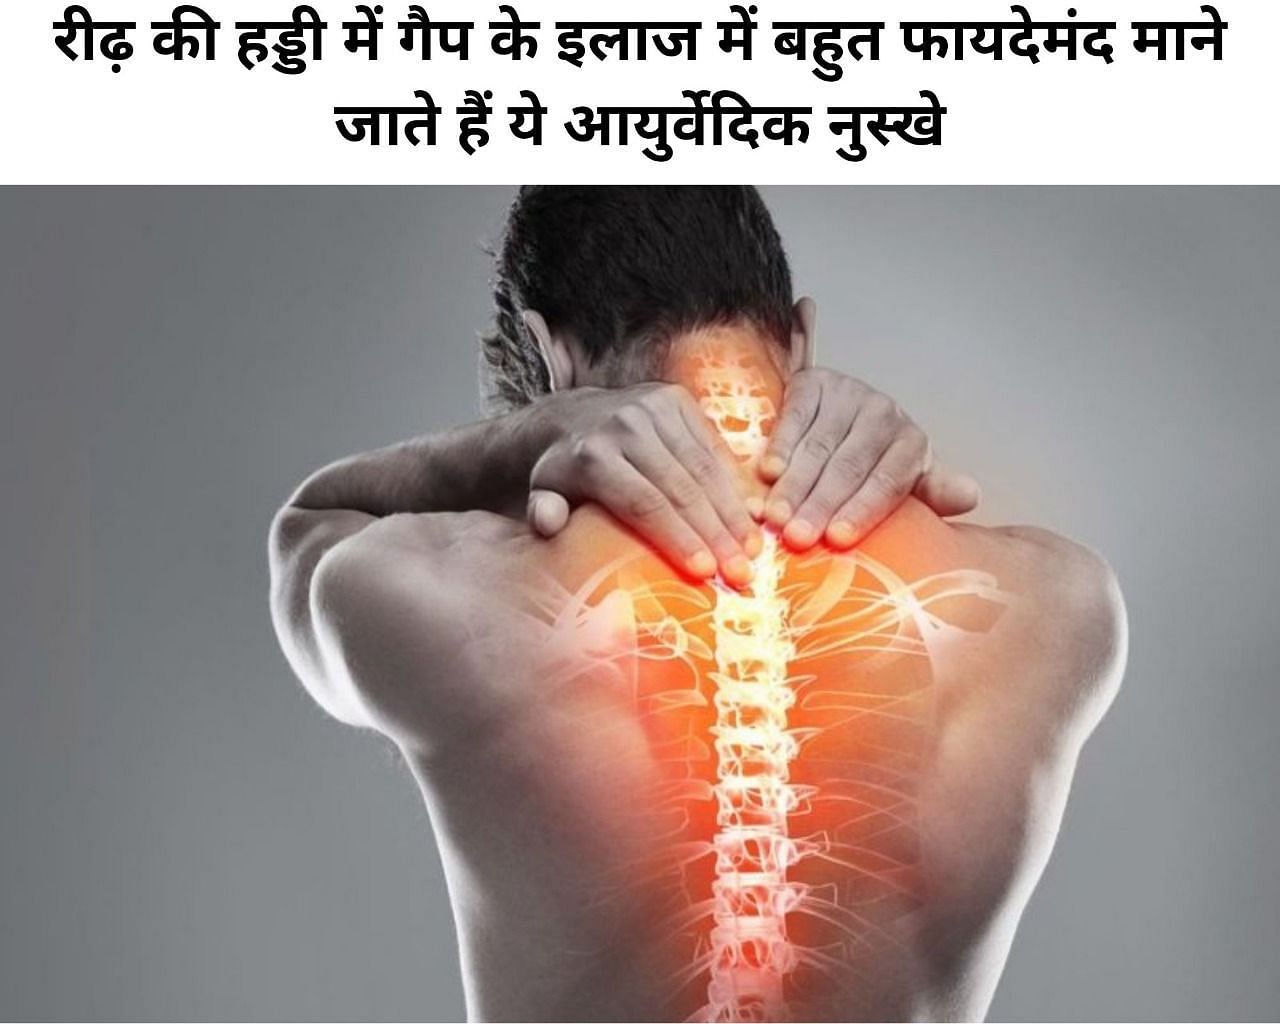 रीढ़ की हड्डी में गैप के इलाज में बहुत फायदेमंद माने जाते हैं ये आयुर्वेदिक नुस्खे (फोटो - sportskeeda hindi)